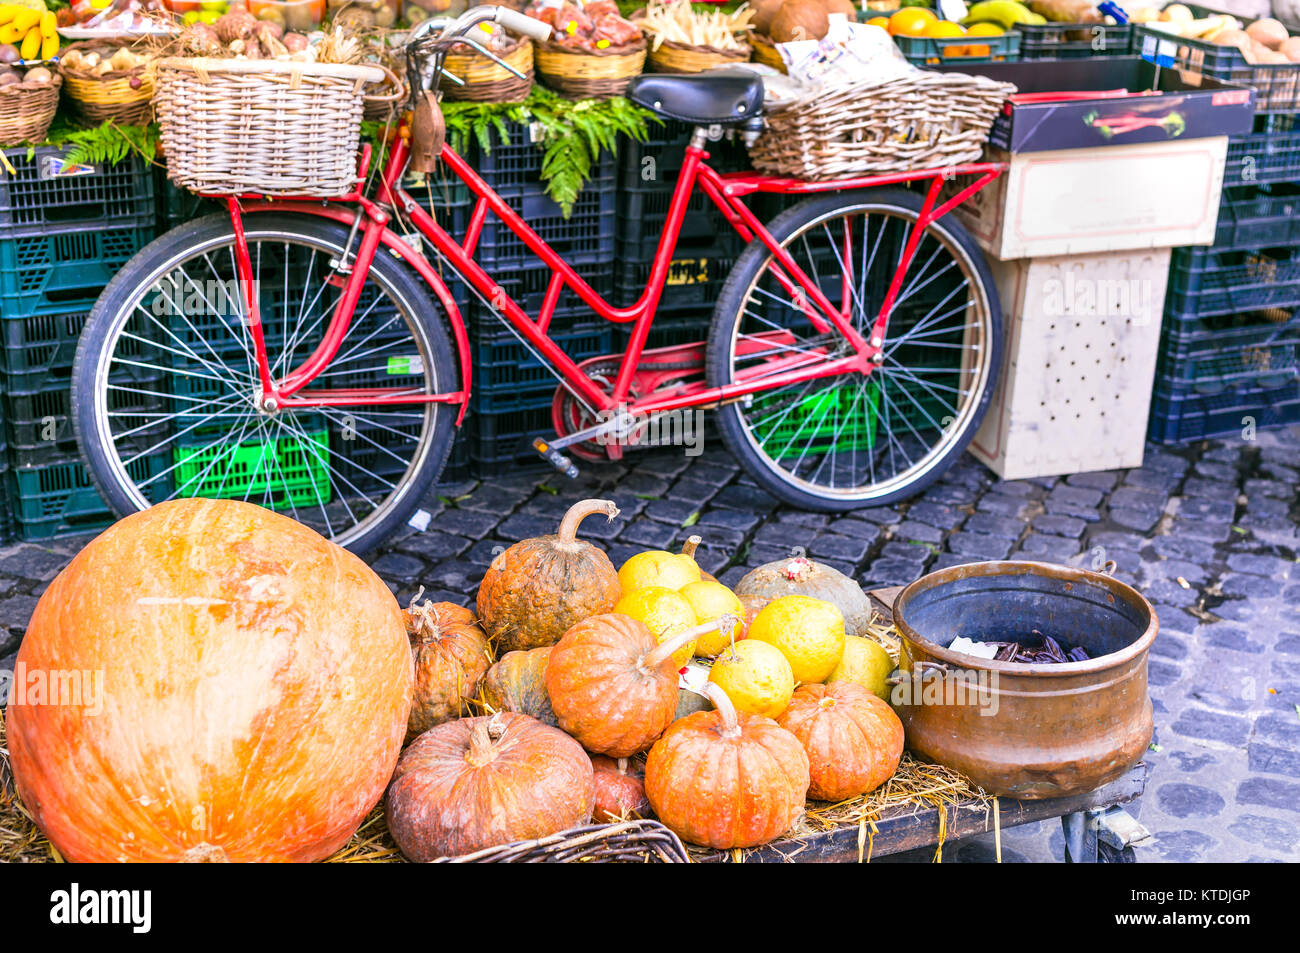 Bunten Obstmarkt, Ansicht mit alten Fahrrad. Stockfoto